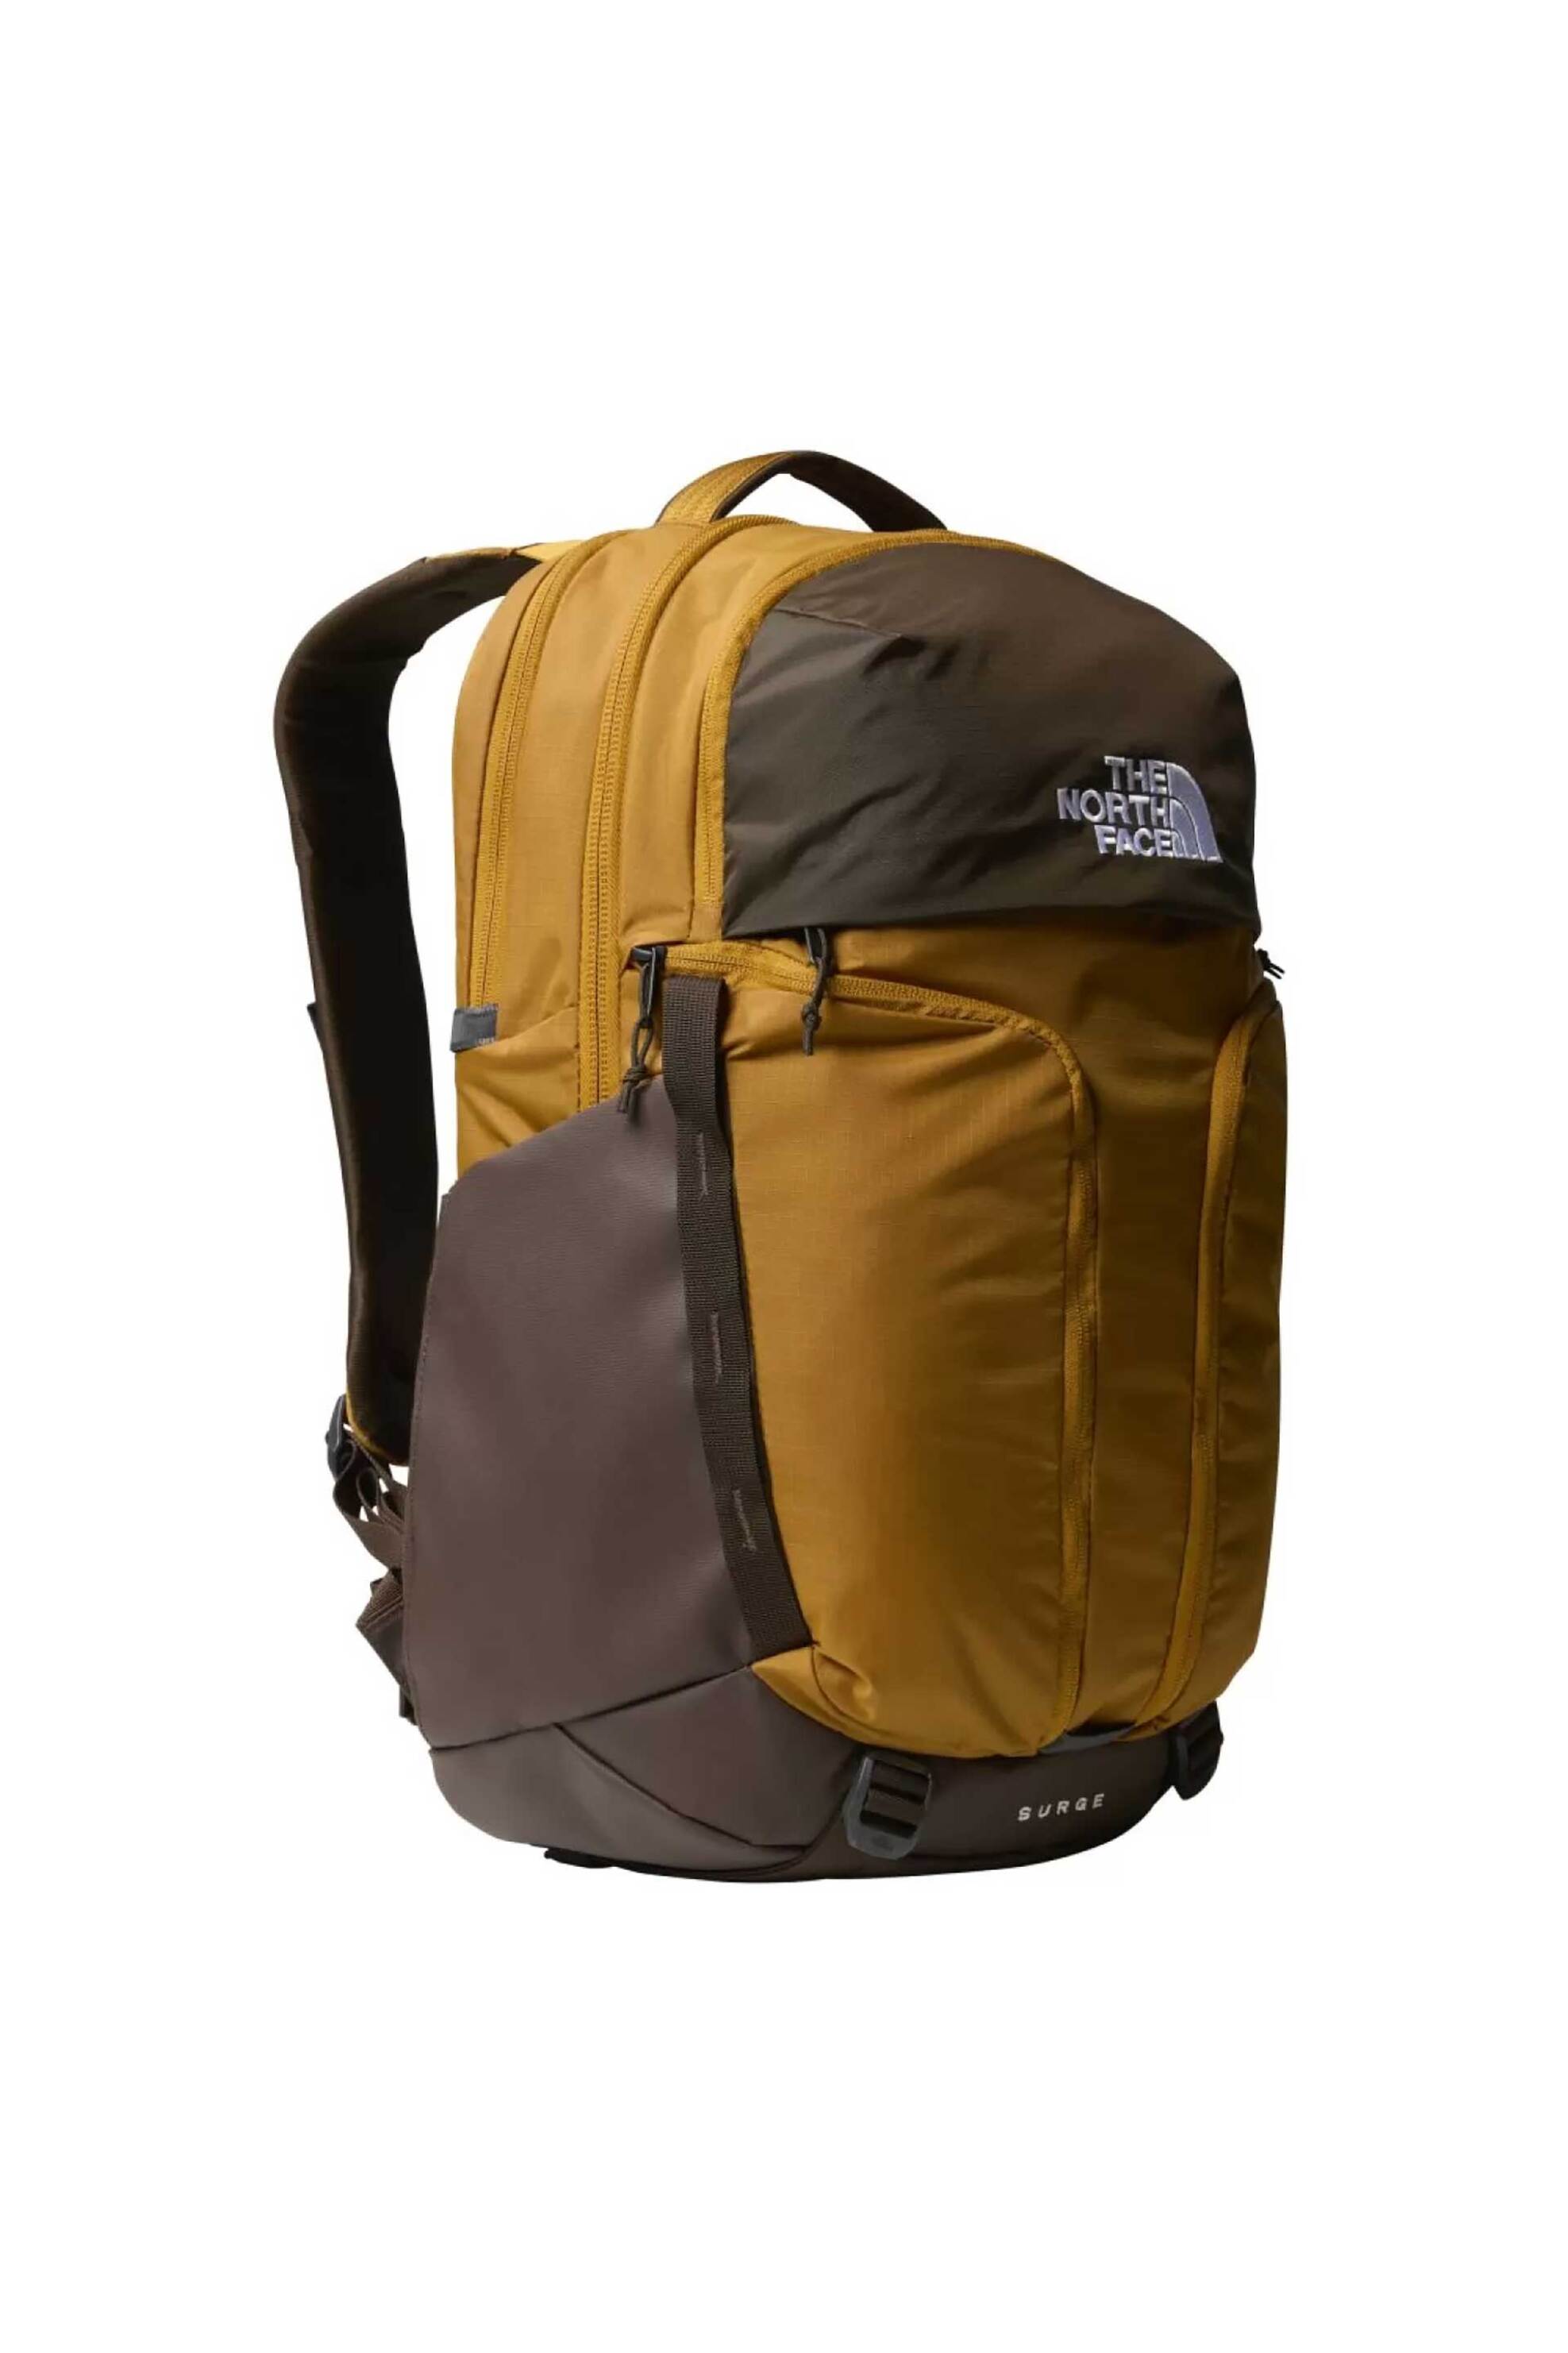 Ανδρική Μόδα > Ανδρικές Τσάντες > Ανδρικά Σακίδια & Backpacks The North Face unisex backpack μονόχρωμο με κεντημένο logo " Face Surge" - NF0A52SGYOL1 Μουσταρδί